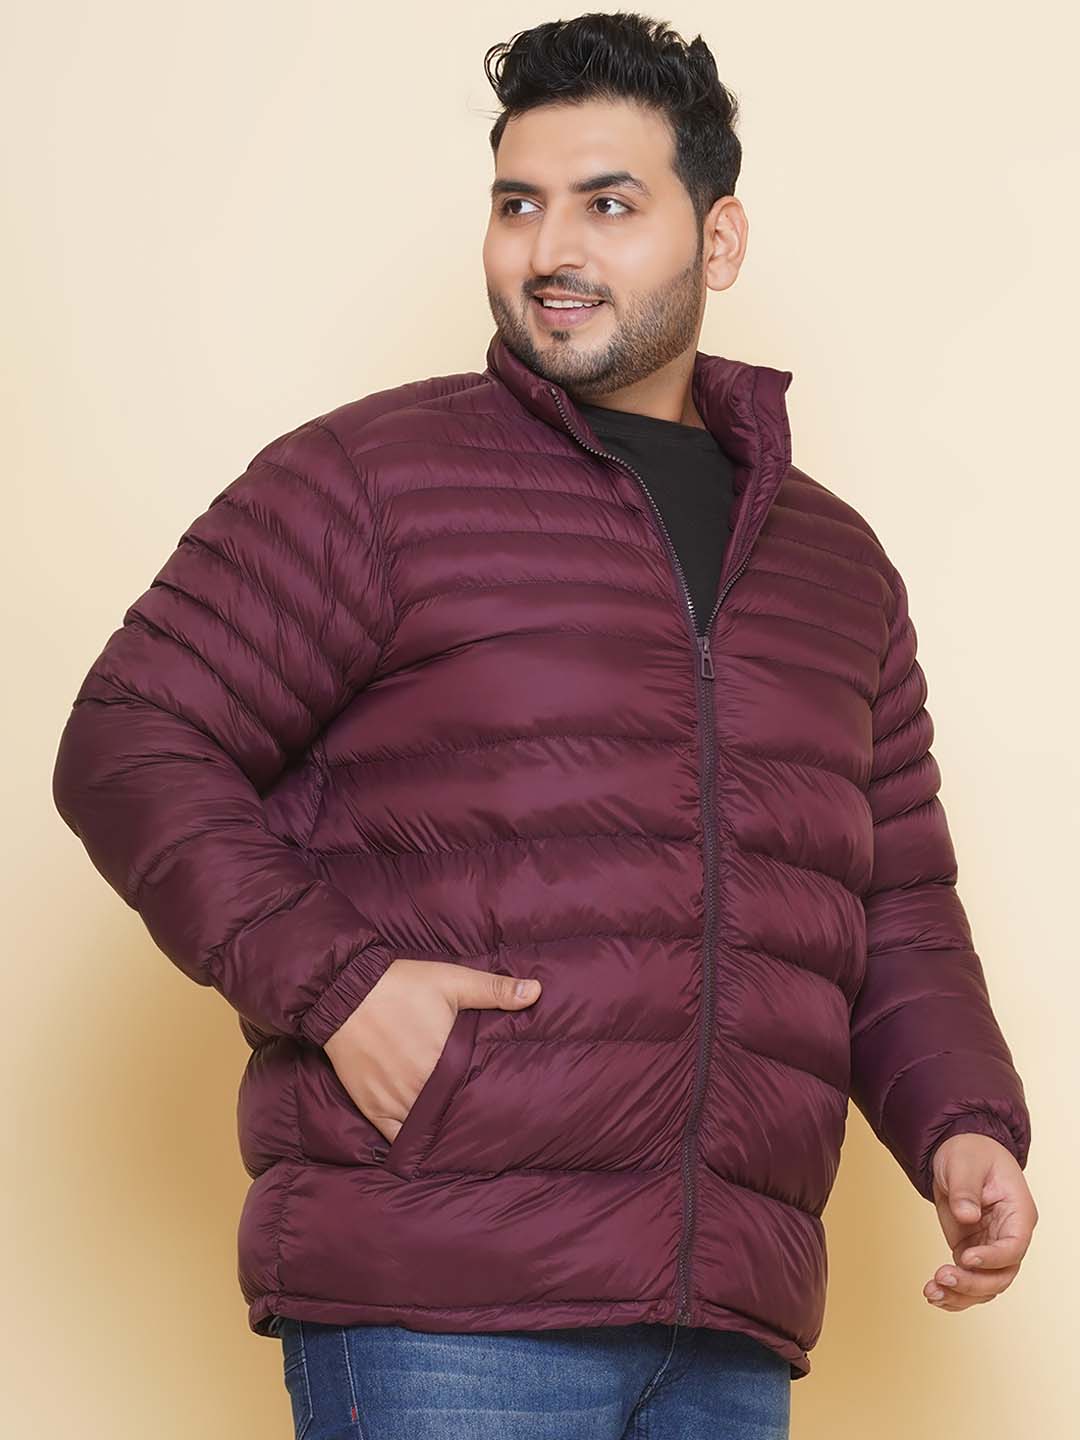 winterwear/jackets/JPJKT73083A/jpjkt73083a-3.jpg